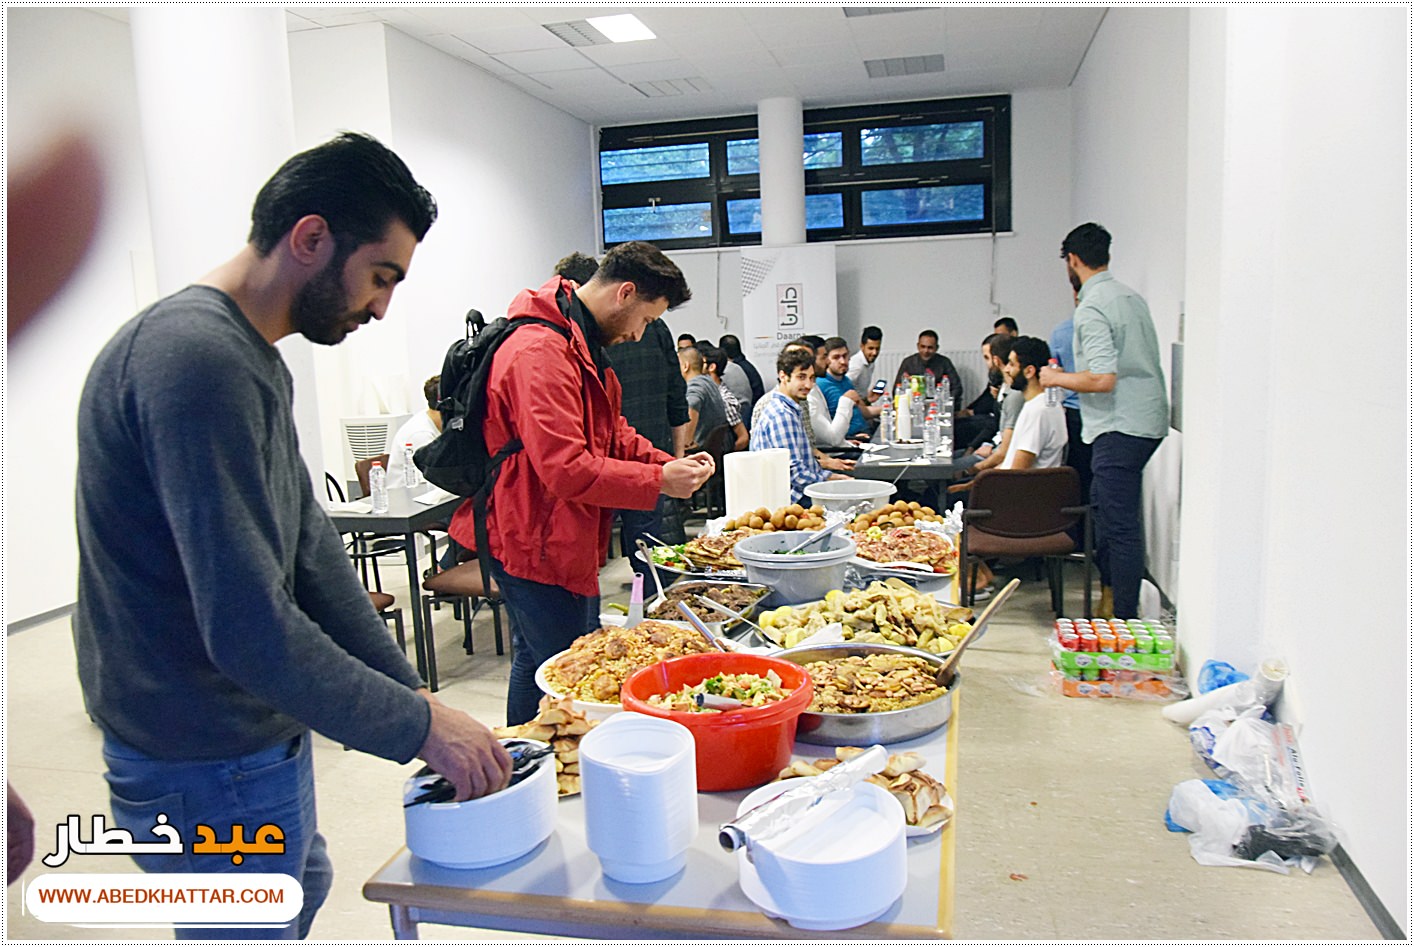 مائدة افطار رمضانية لطلابنا الفلسطينيين في مركز دارنا في برلين